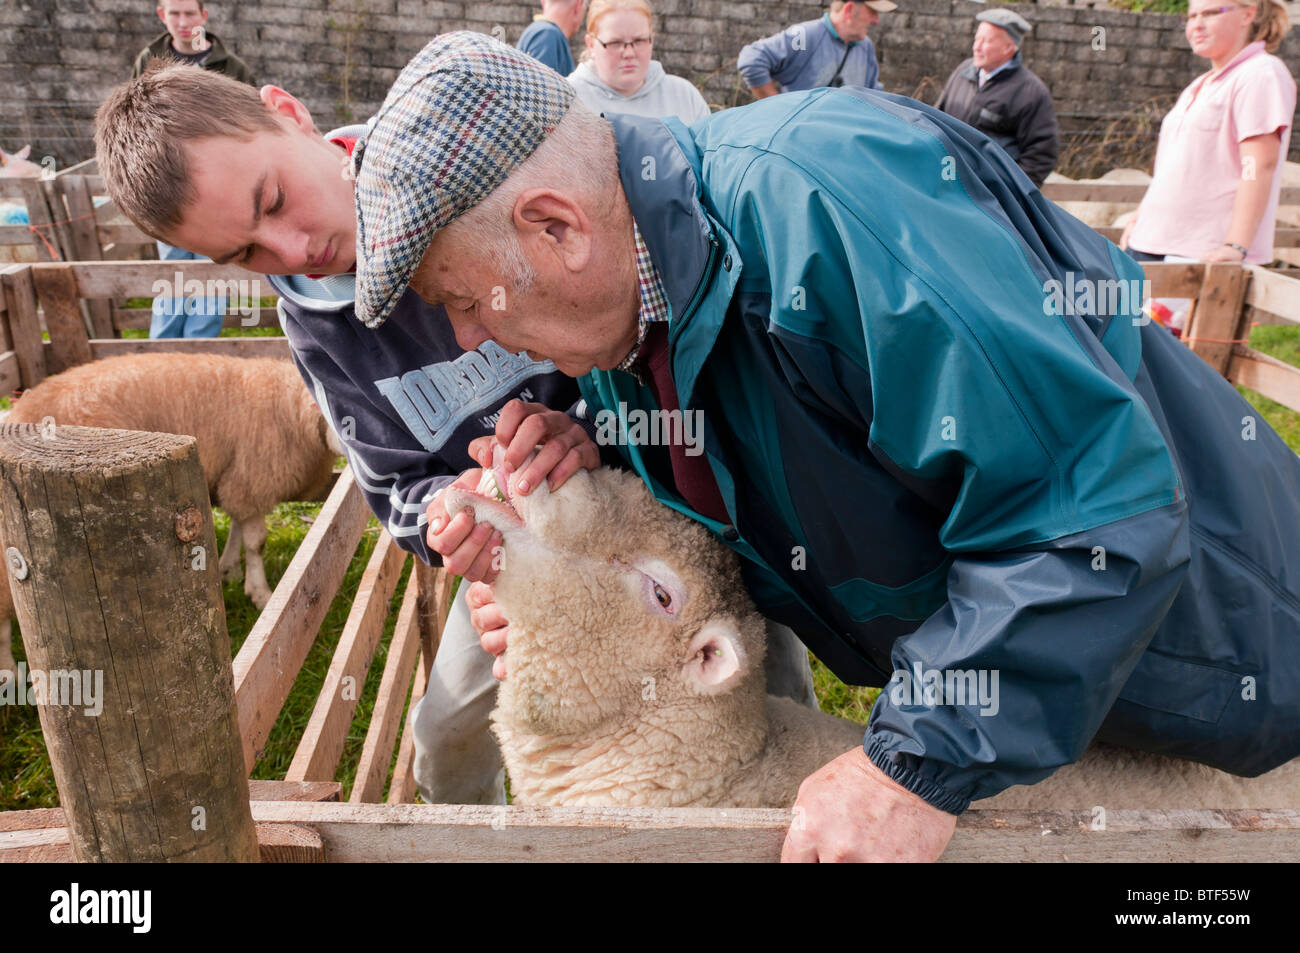 Un agriculteur inspecte les dents de moutons au cours de jugement à un mouton juste Banque D'Images